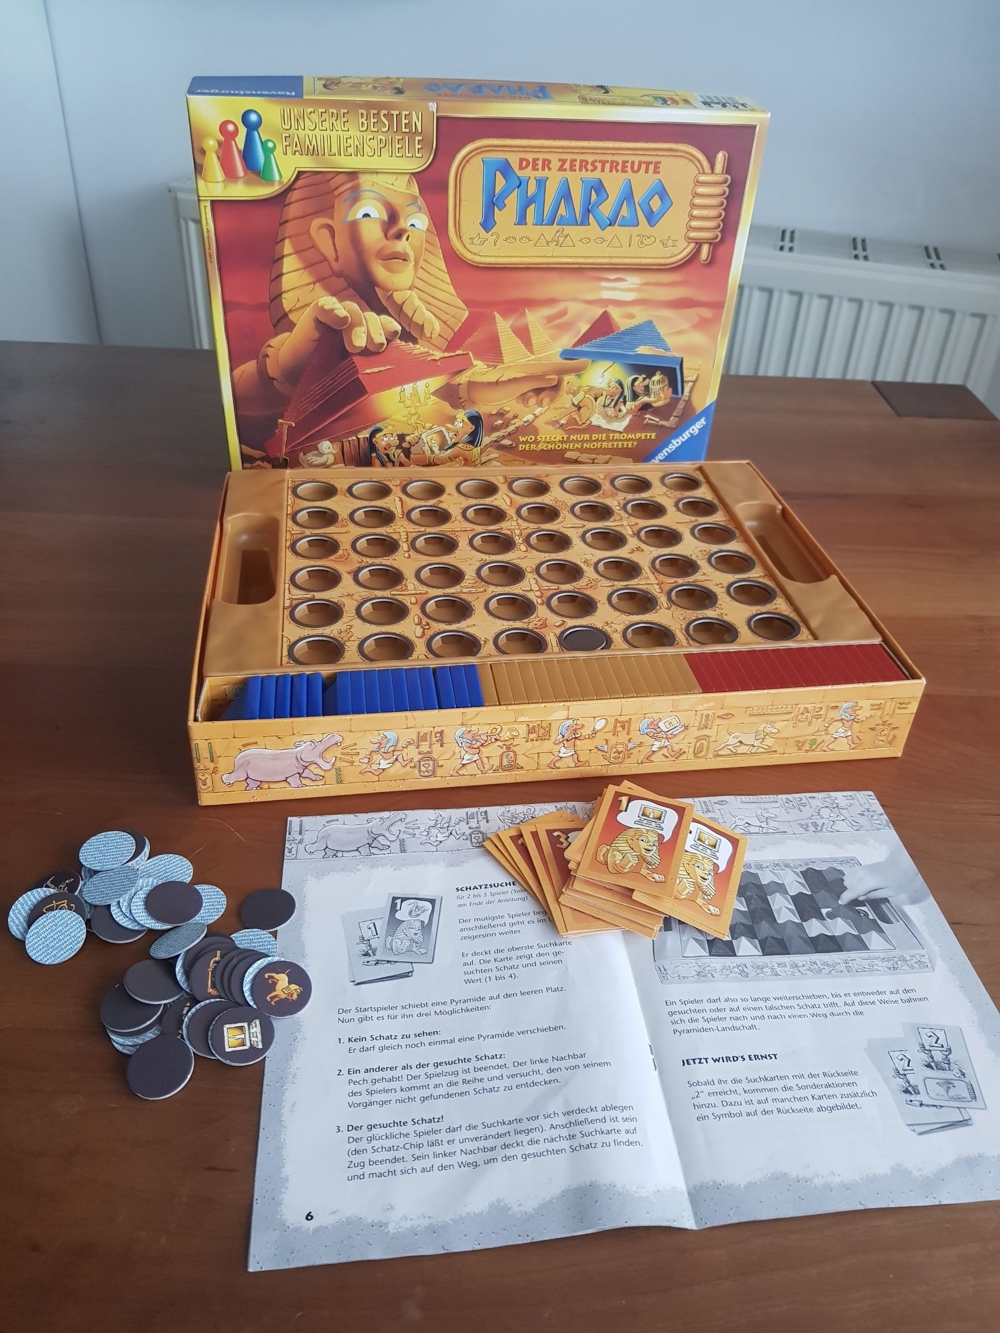 Der zerstreute Pharao - Gesellschaftsspiel für die ganze Familie, ab 7 Jahren, für 1-5 Spieler